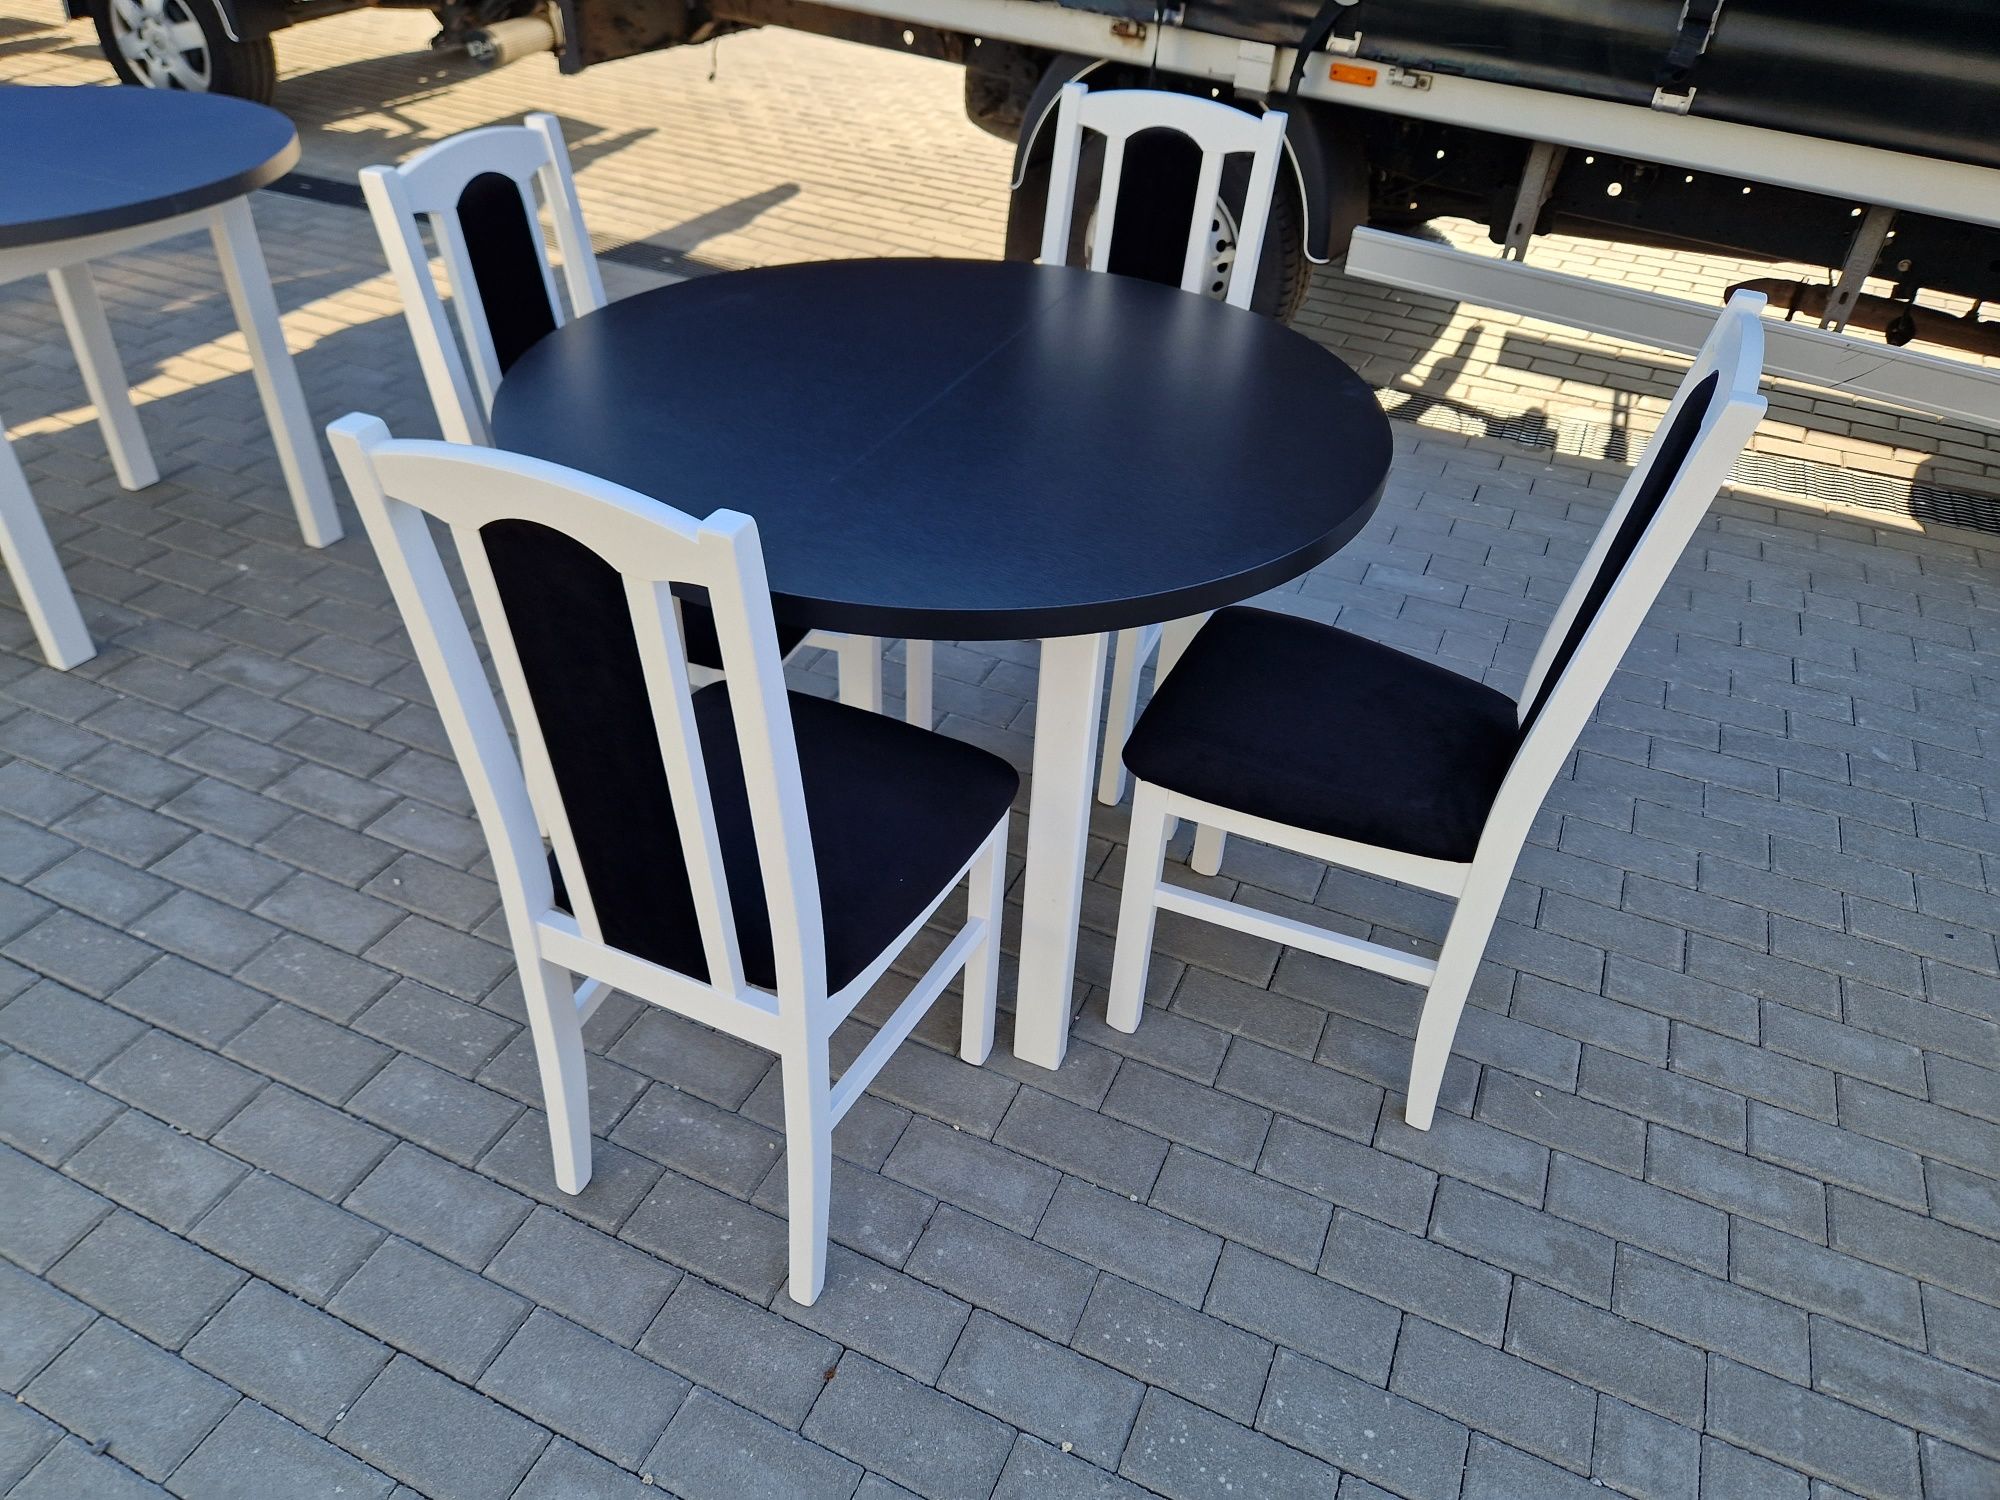 Nowe: Stół okrągły + 4 krzesła, biały/blat czarny + czarny , transPL